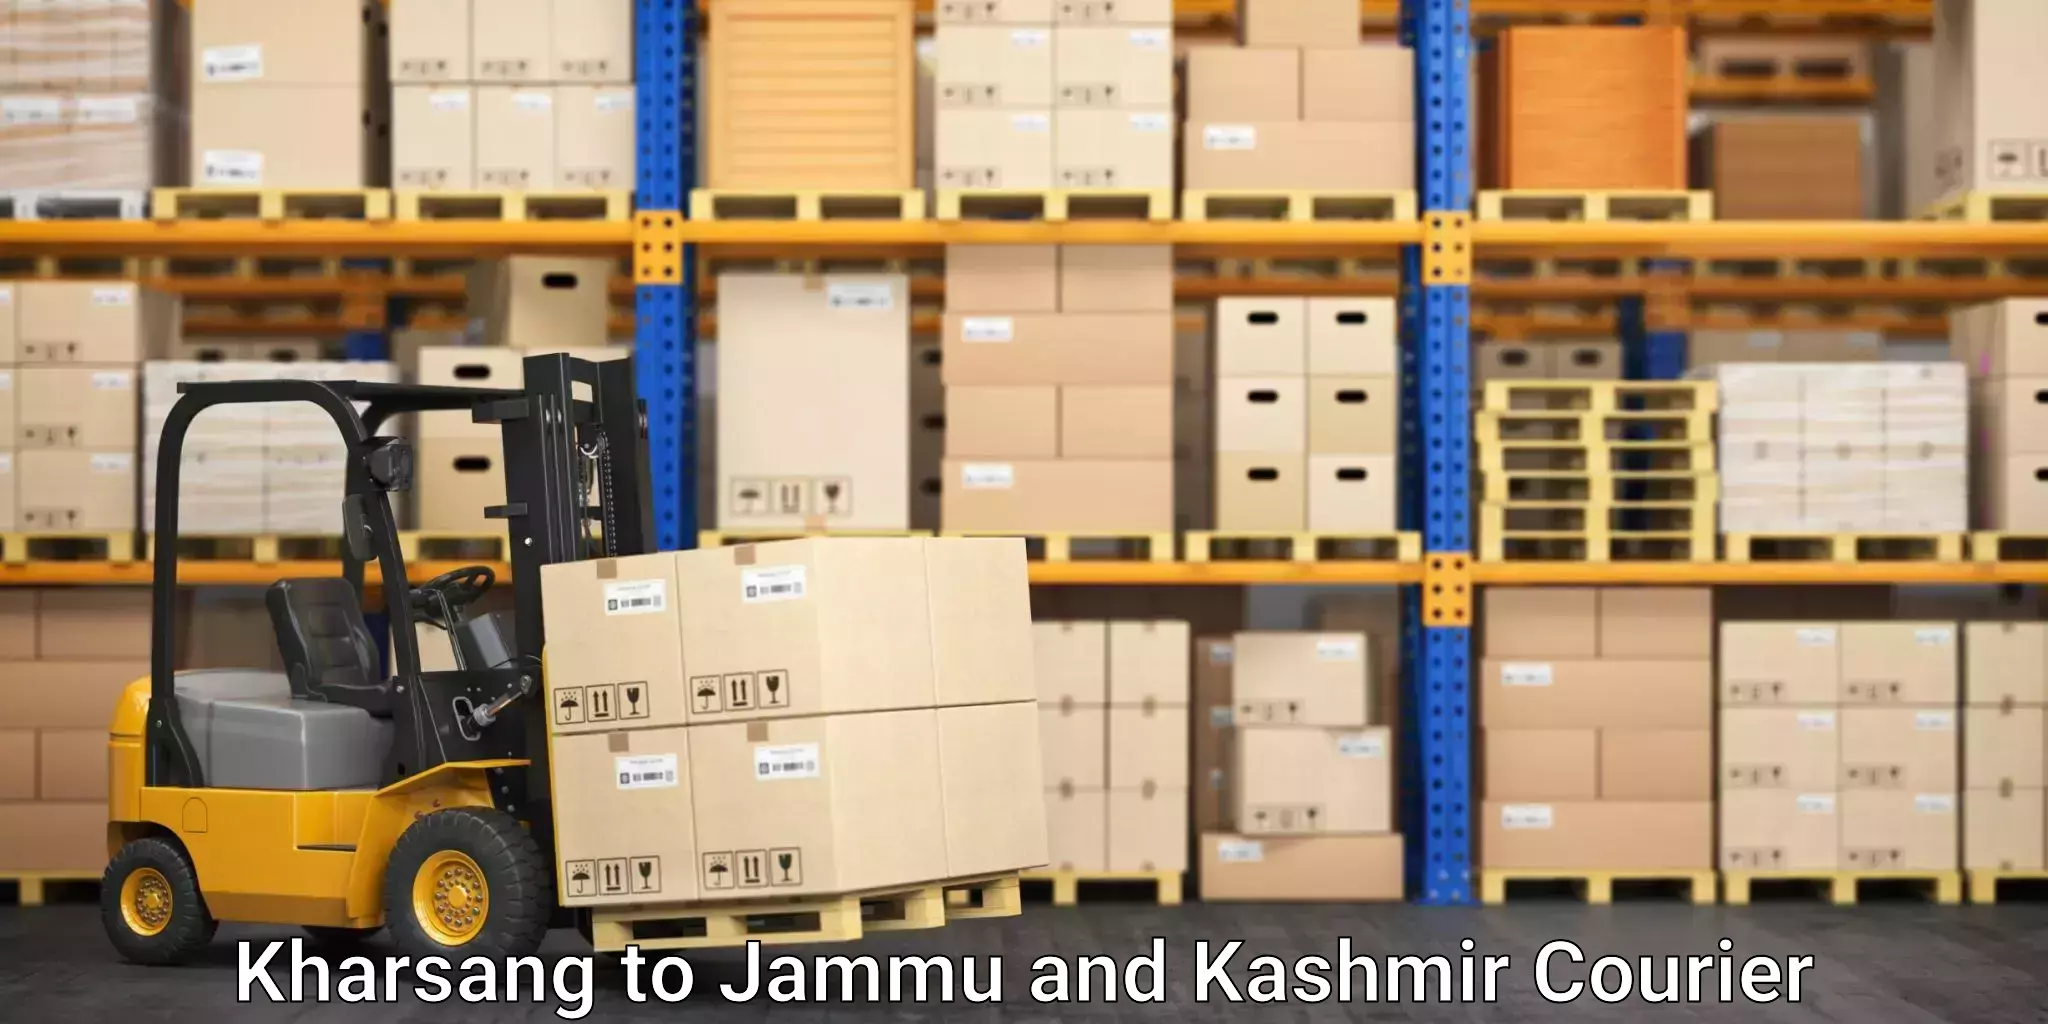 On-demand shipping options Kharsang to Jammu and Kashmir